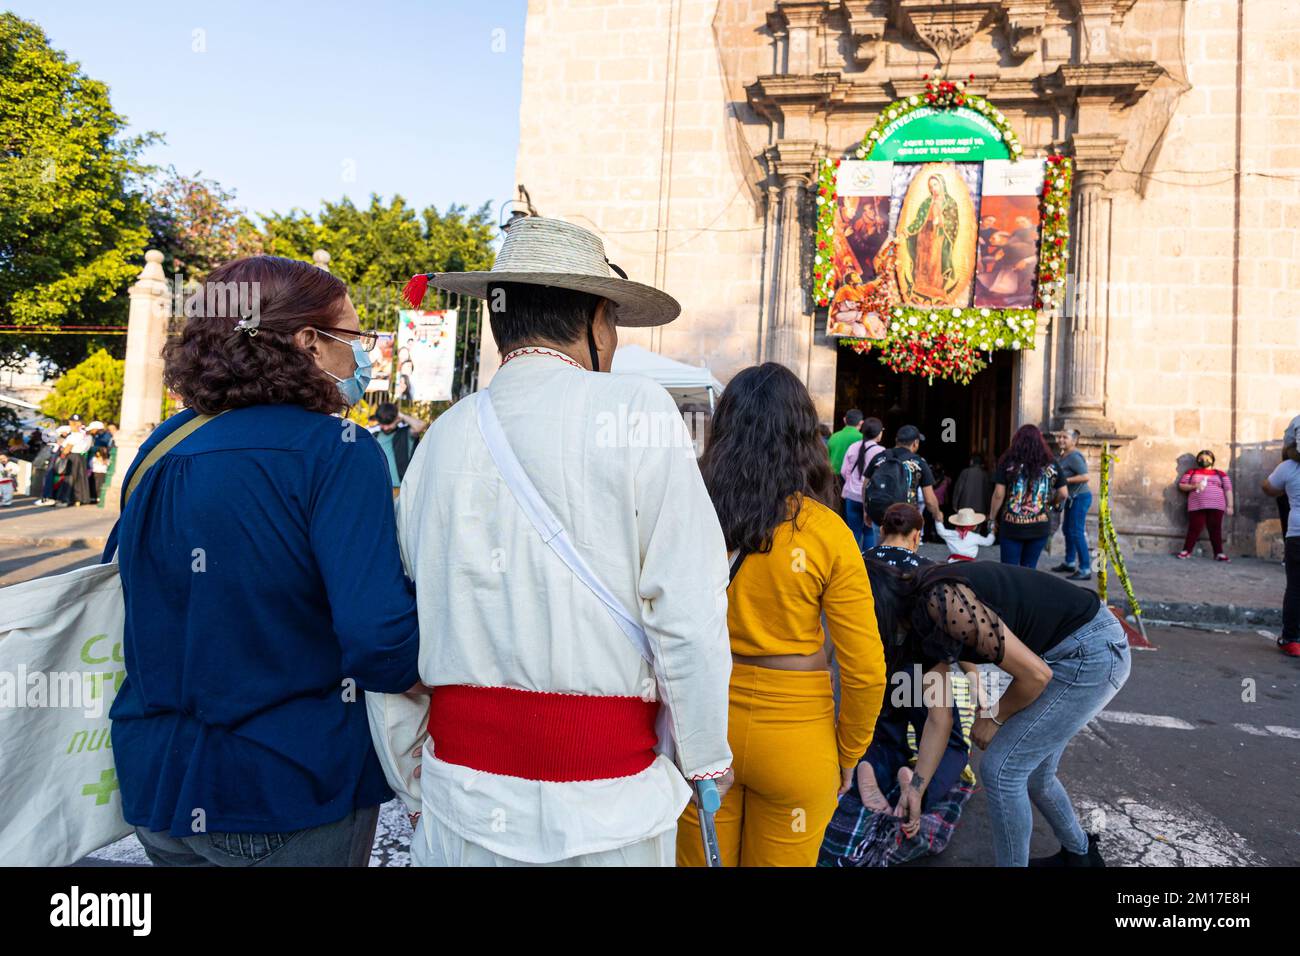 Morelia, Mexiko, 10. Dezember 2022, Ein Mann, der traditionell gekleidet ist wie Juan Diego, begleitet seine Familie und hat Buße getan während des Tages der Jungfrau von Guadalupe. Millionen Mexikaner jeden Alters feiern diesen religiösen Feiertag, der am 12.. Dezember gipfelt. Brian Cocast/Alamy Live News. Stockfoto